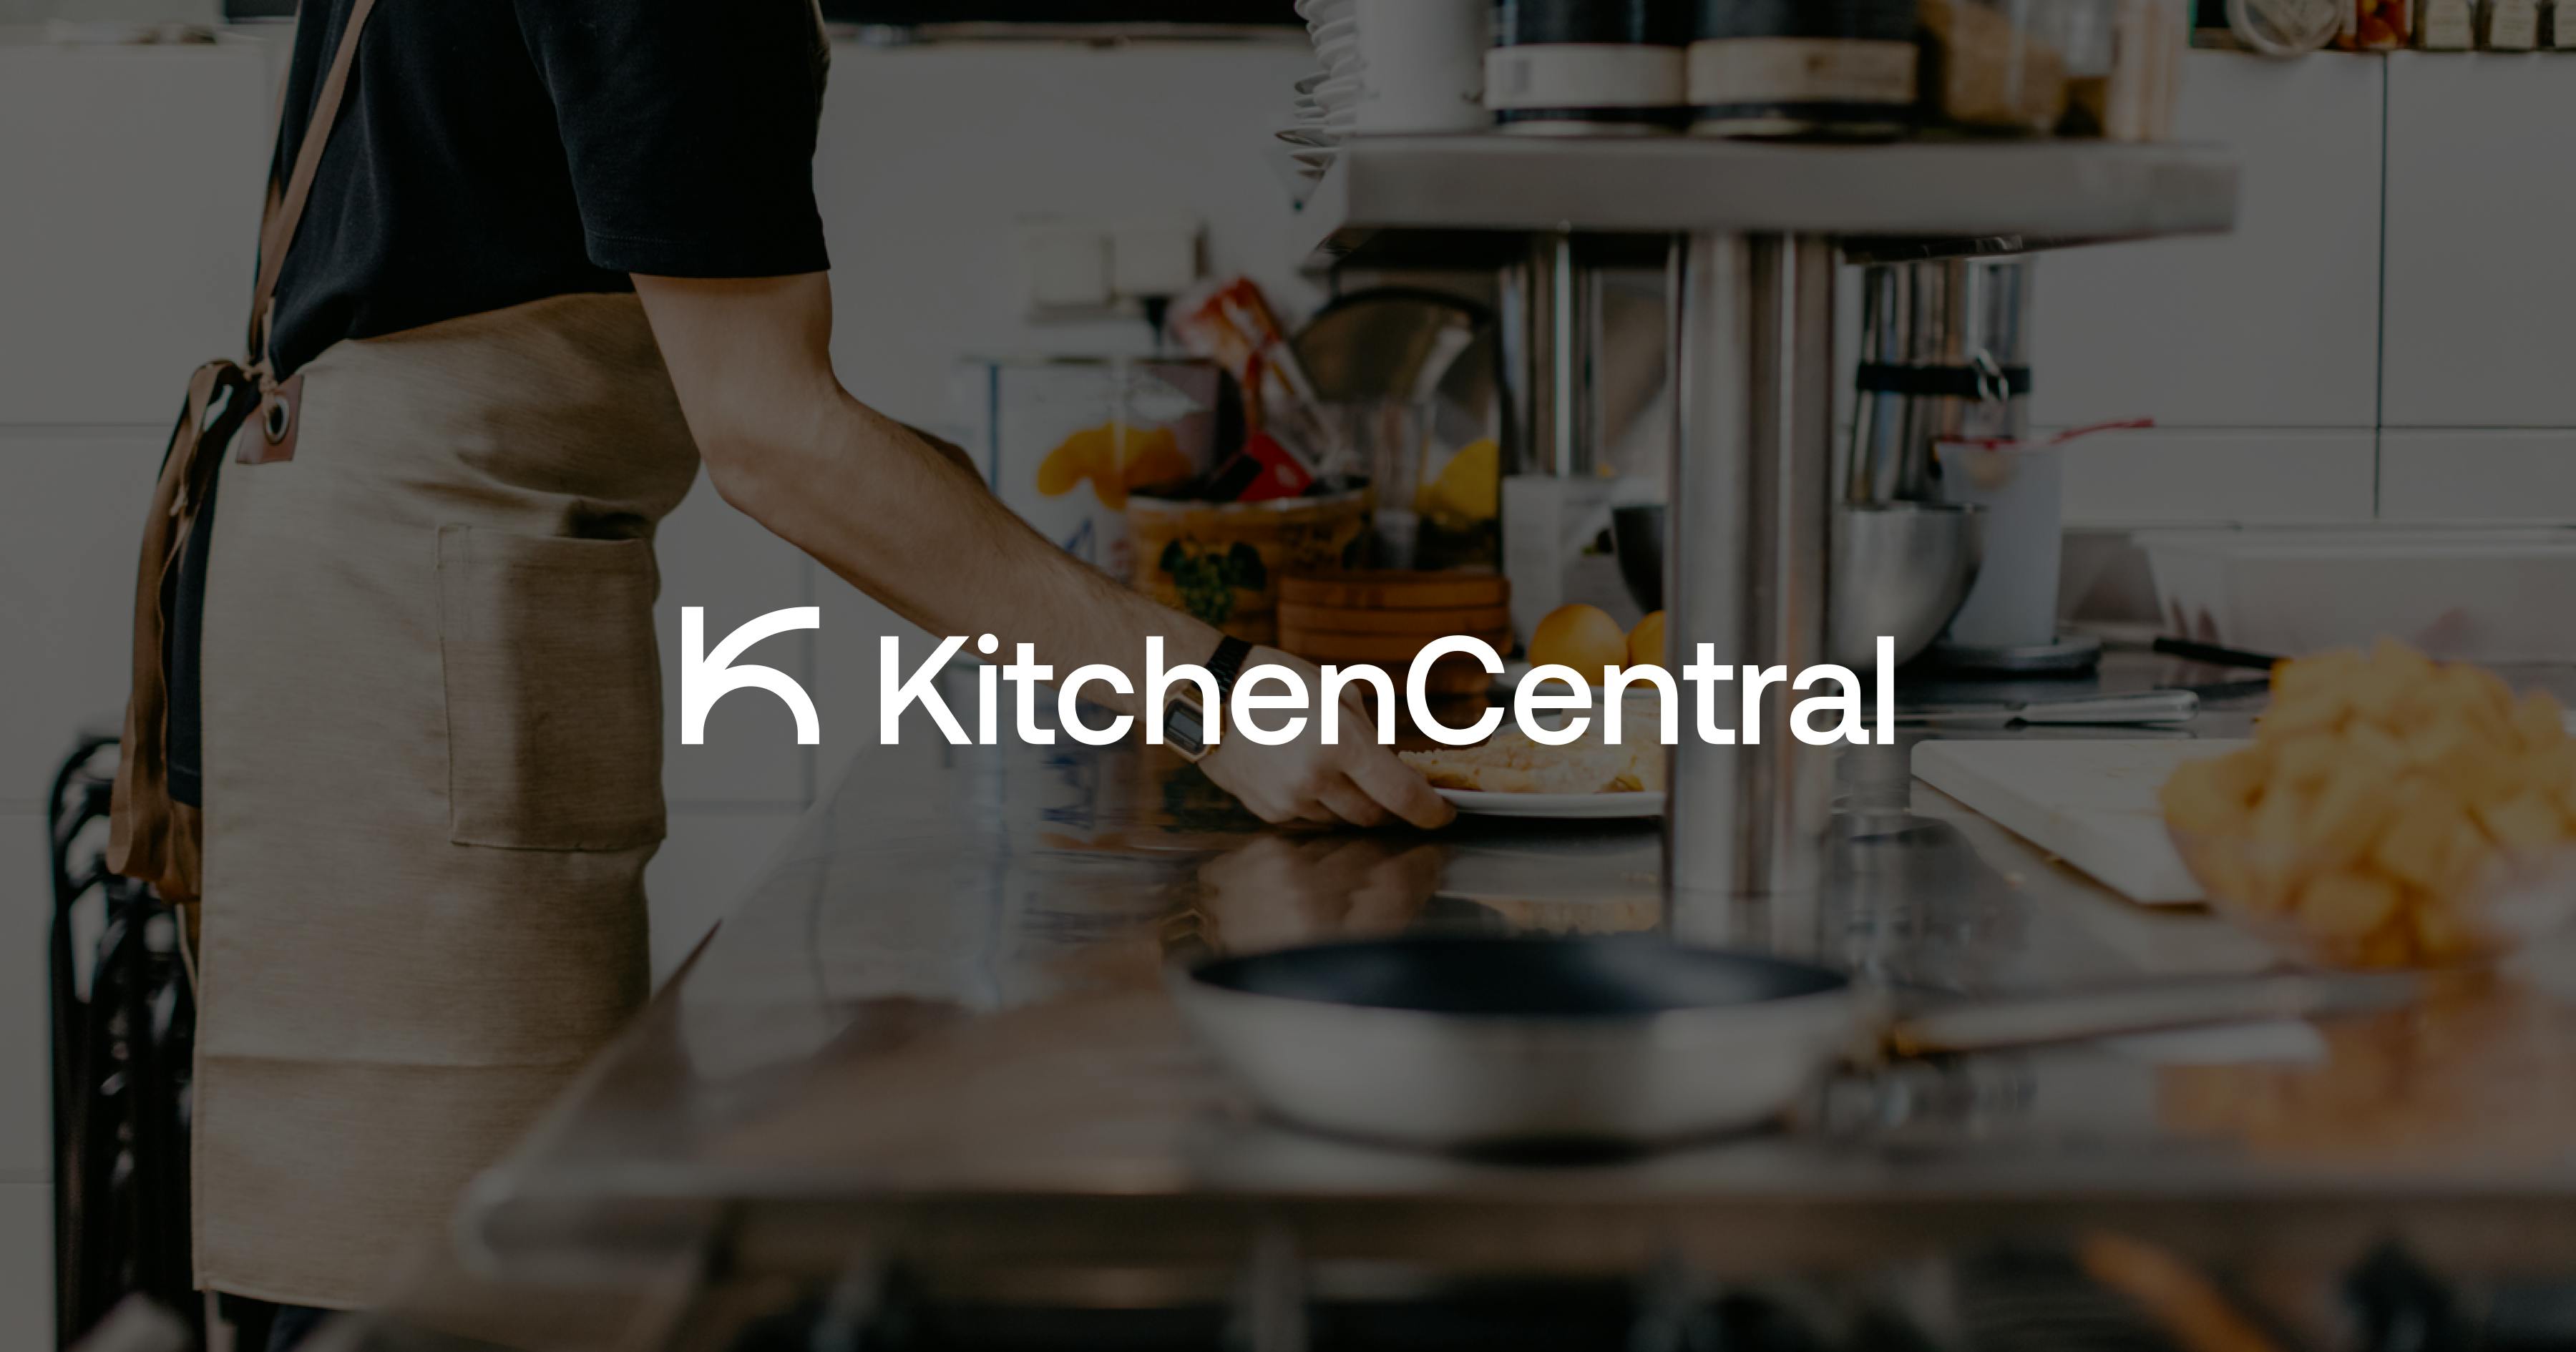 (c) Kitchencentral.com.br